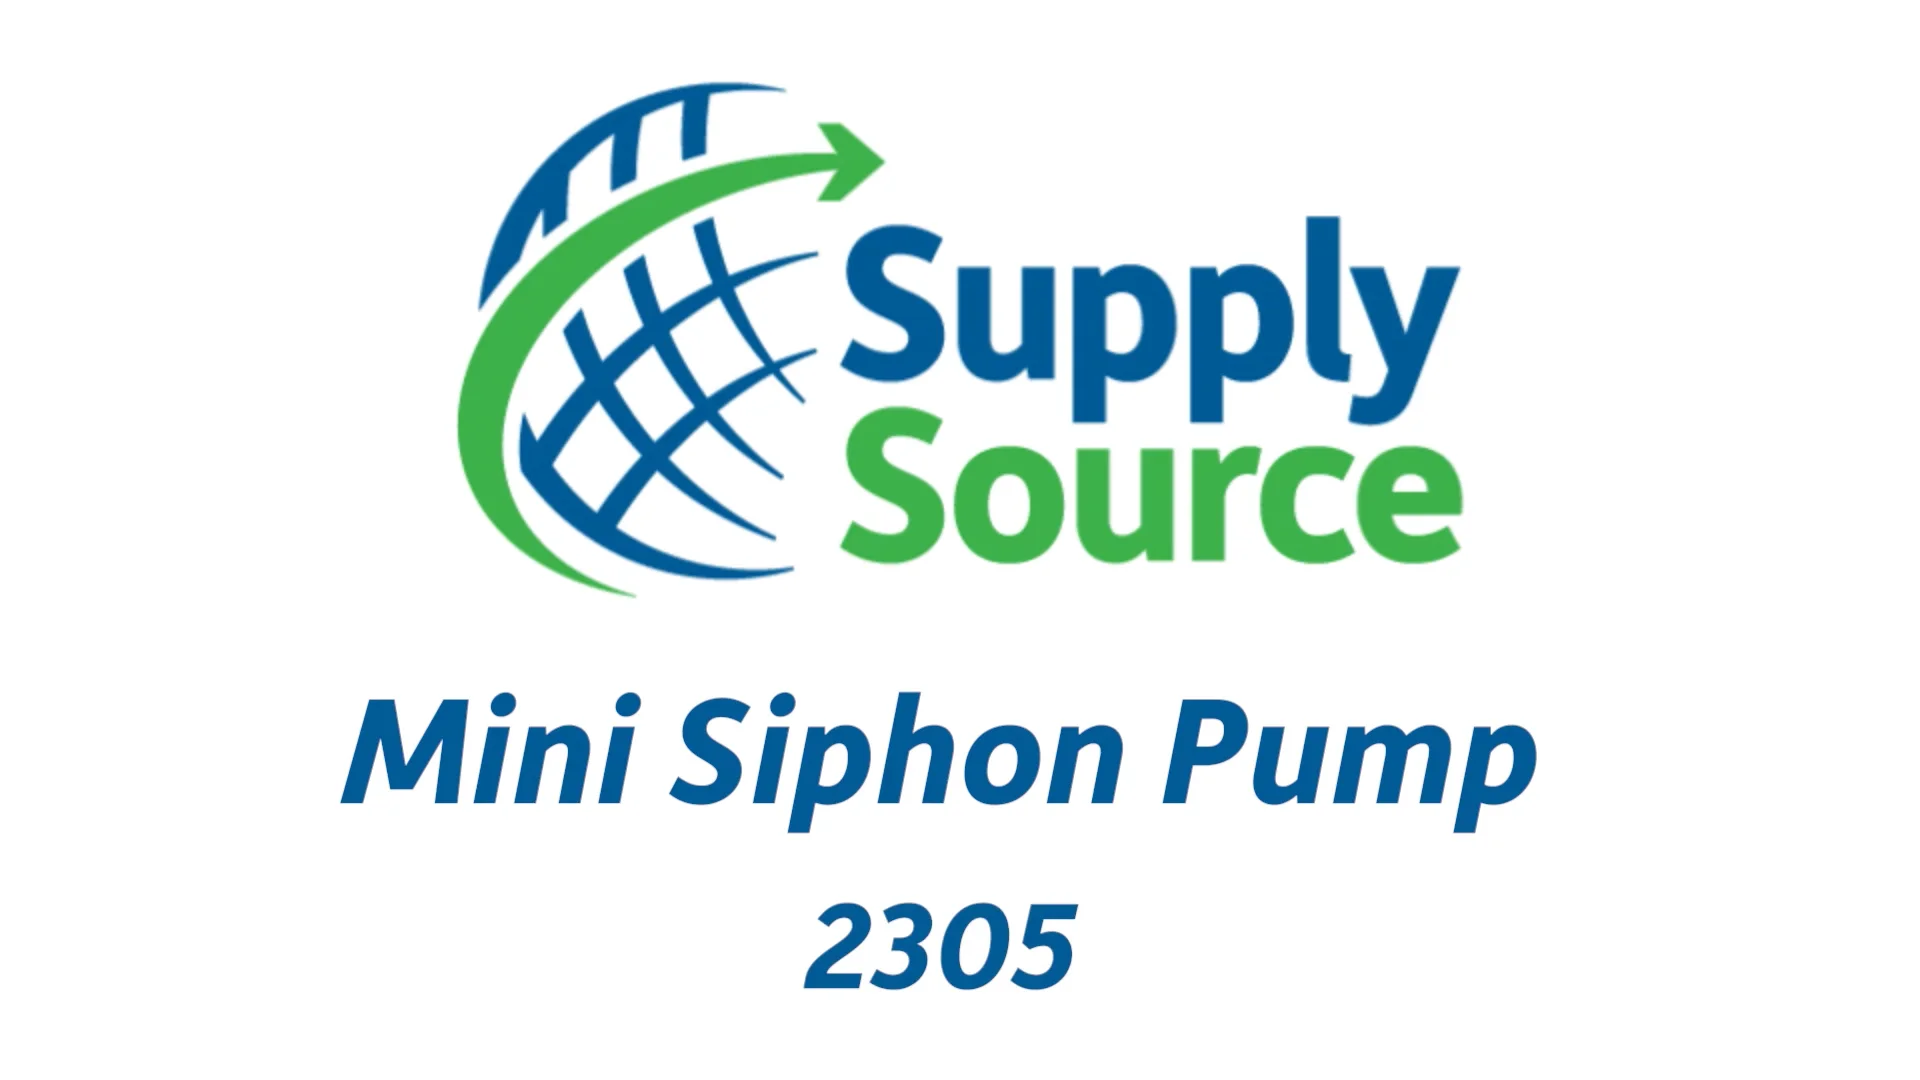 Mini Siphon Pump